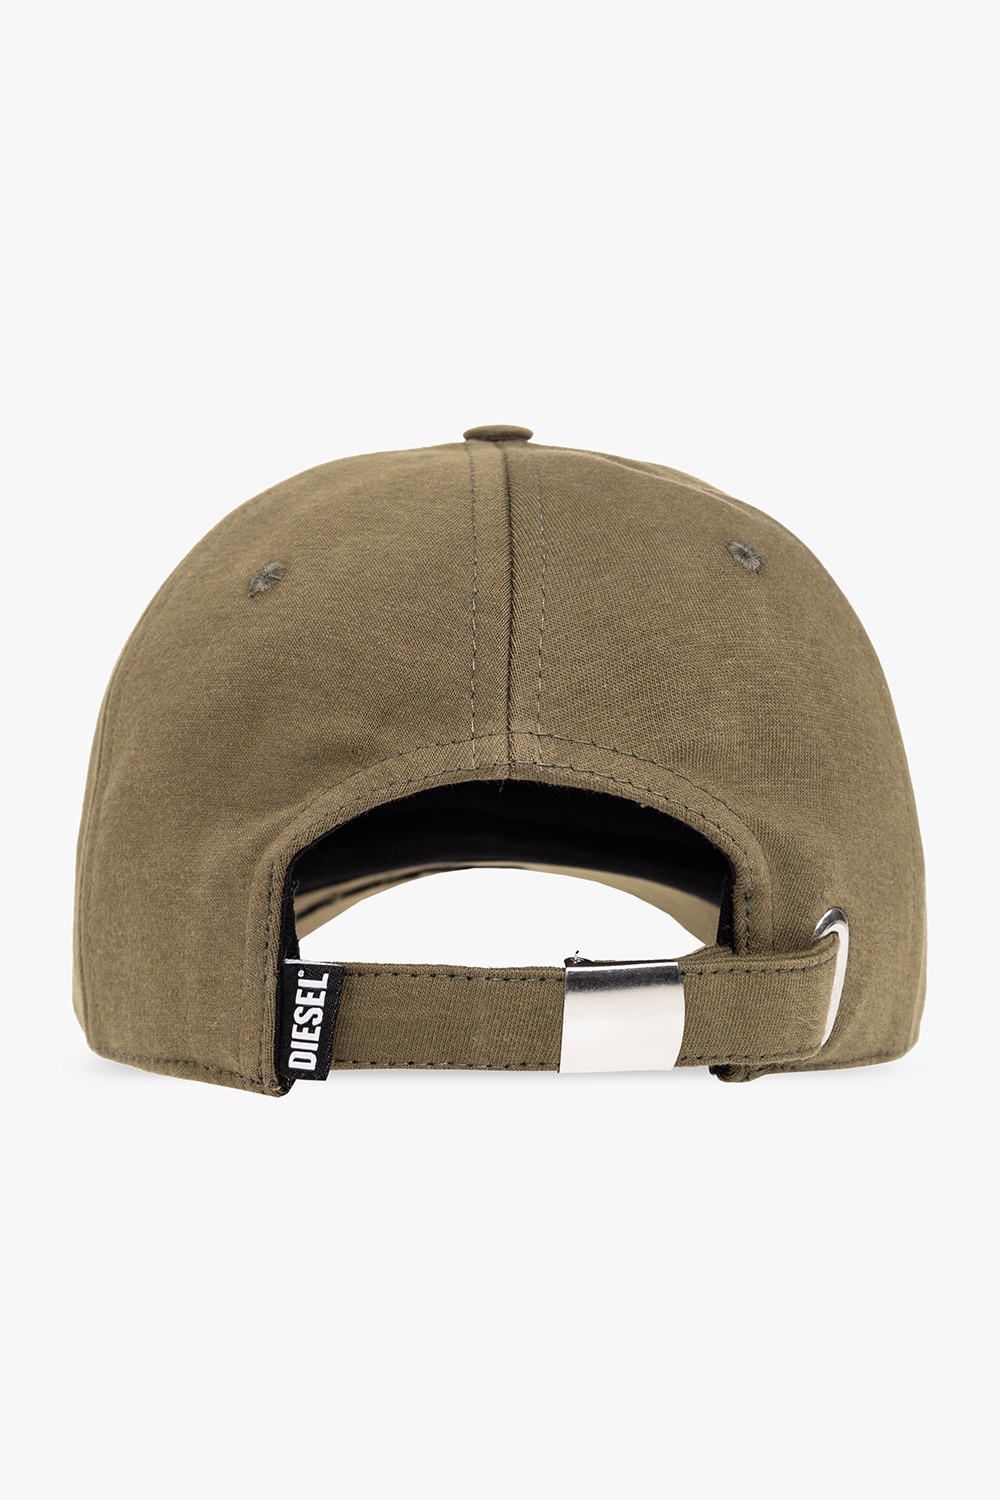 Diesel 'Exclusive for SneakersbeShops’ baseball cap